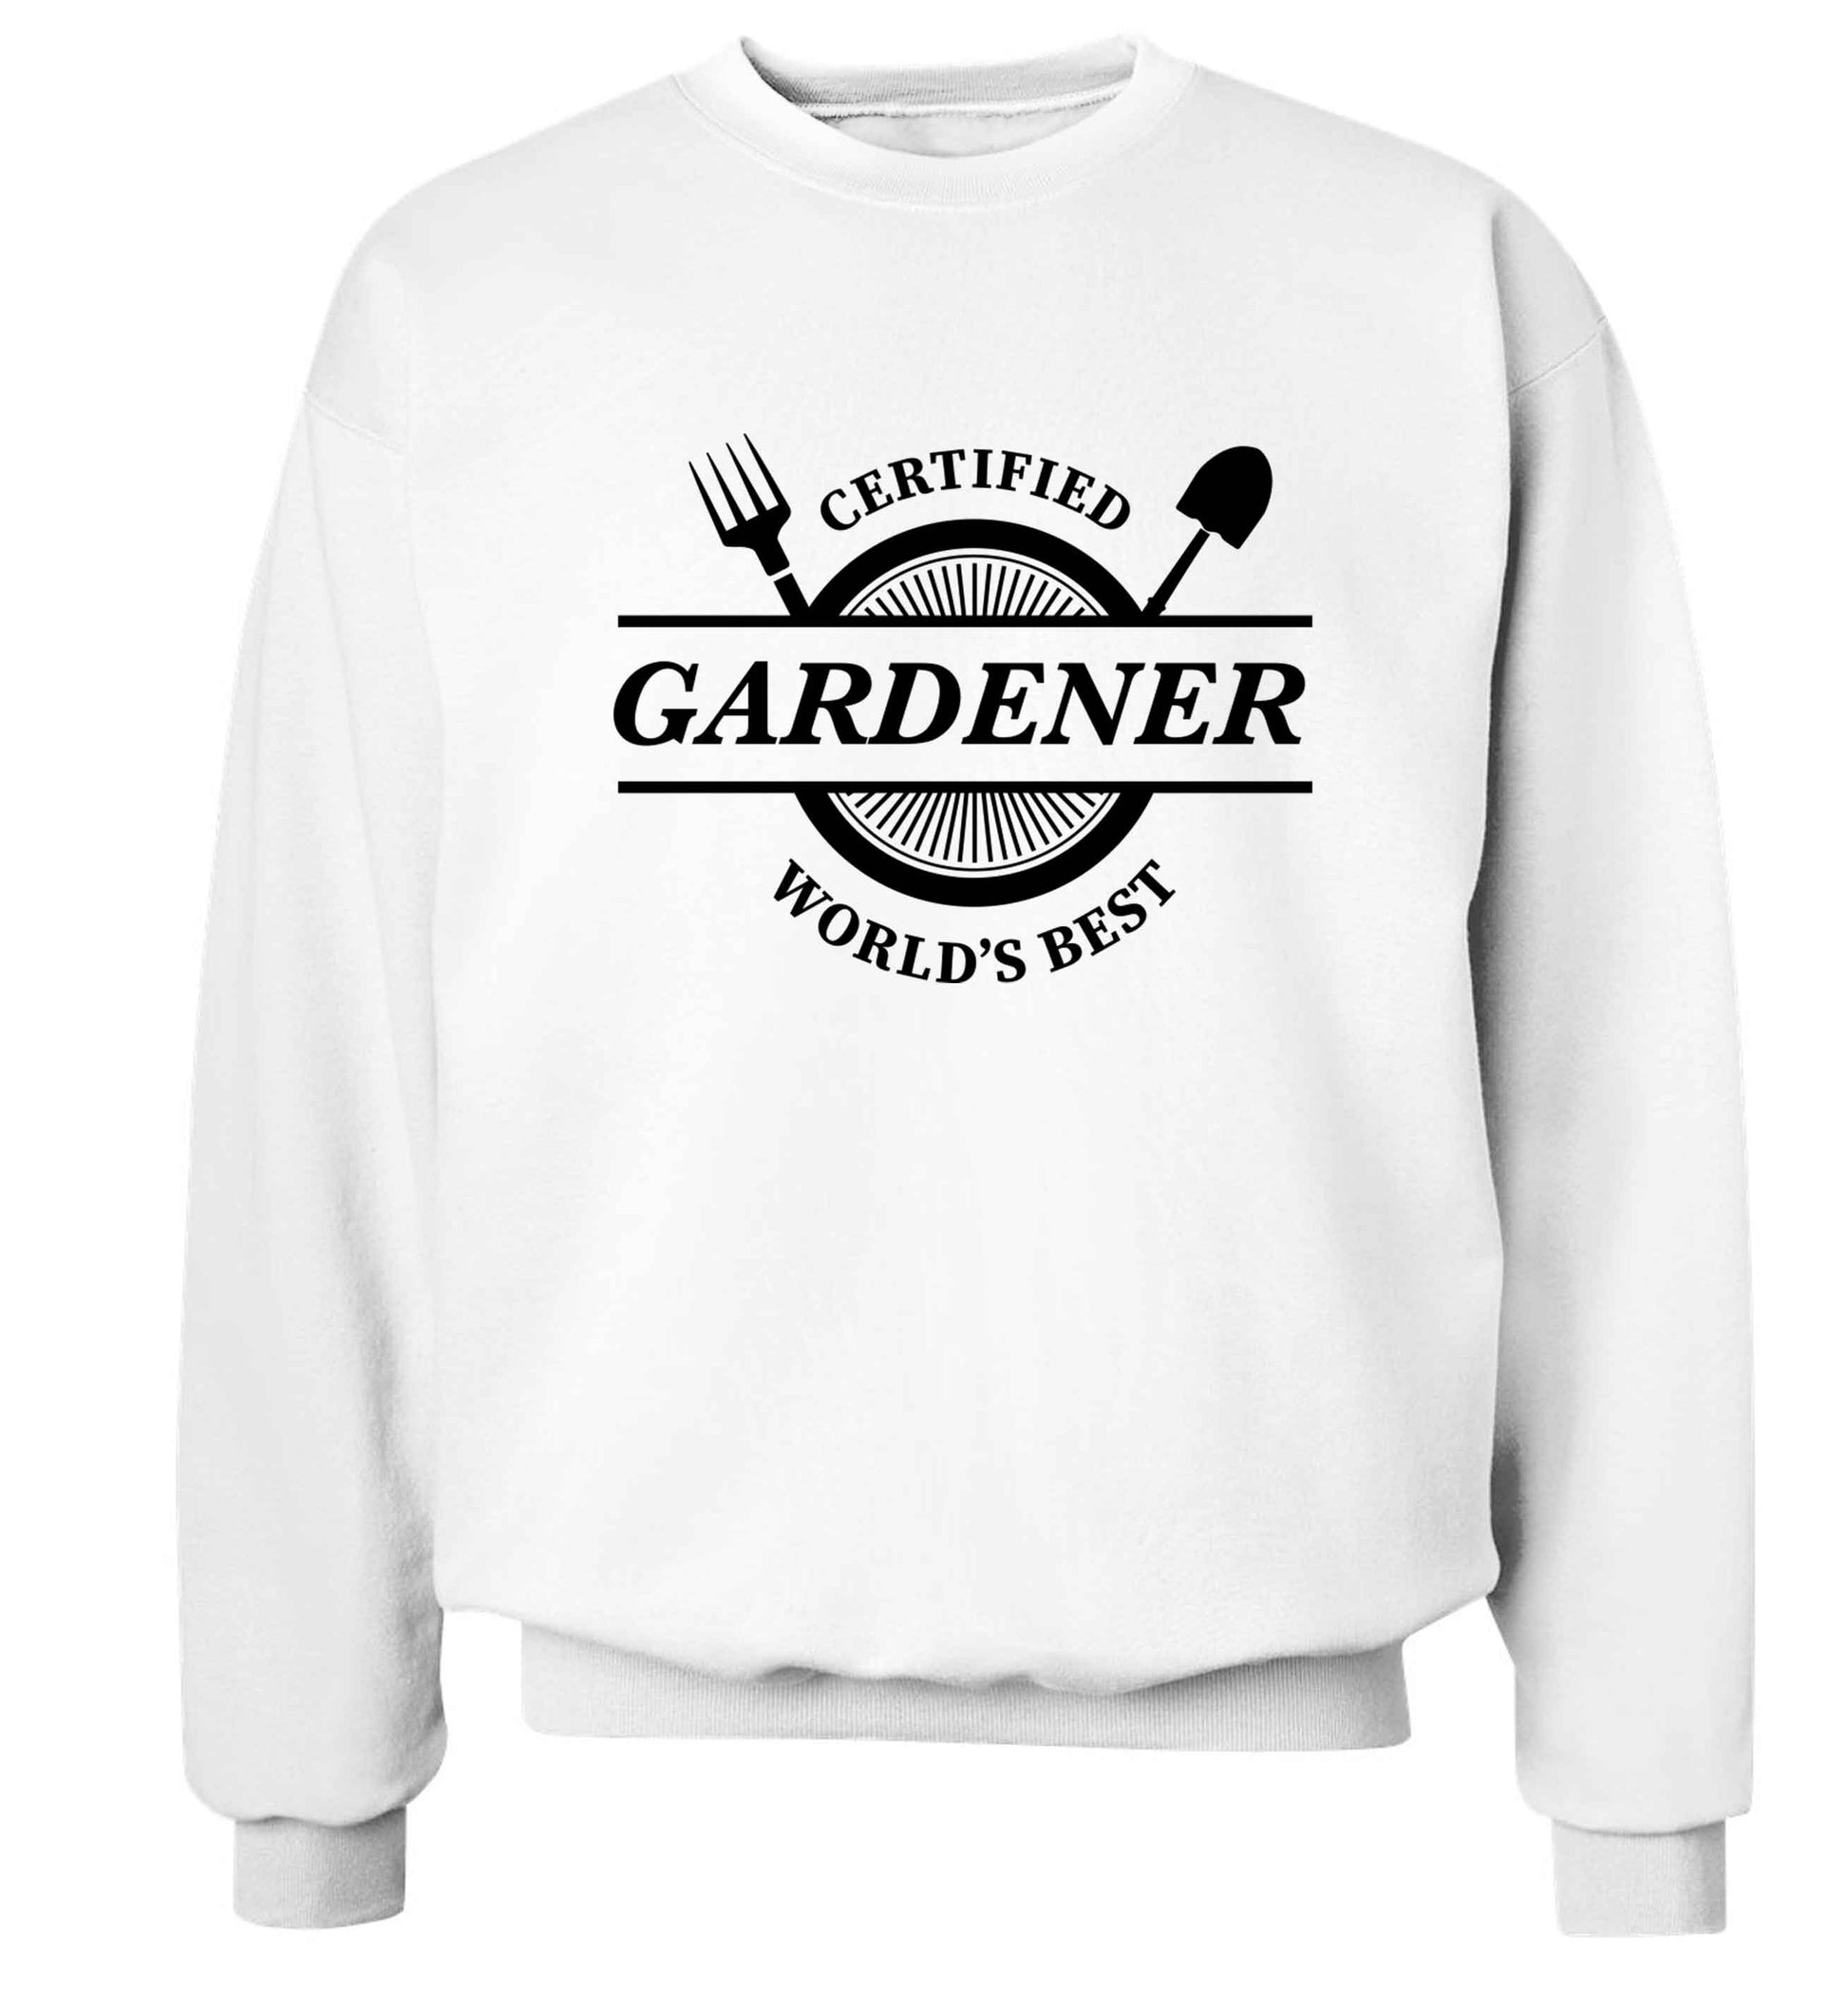 Certified gardener worlds best Adult's unisex white Sweater 2XL